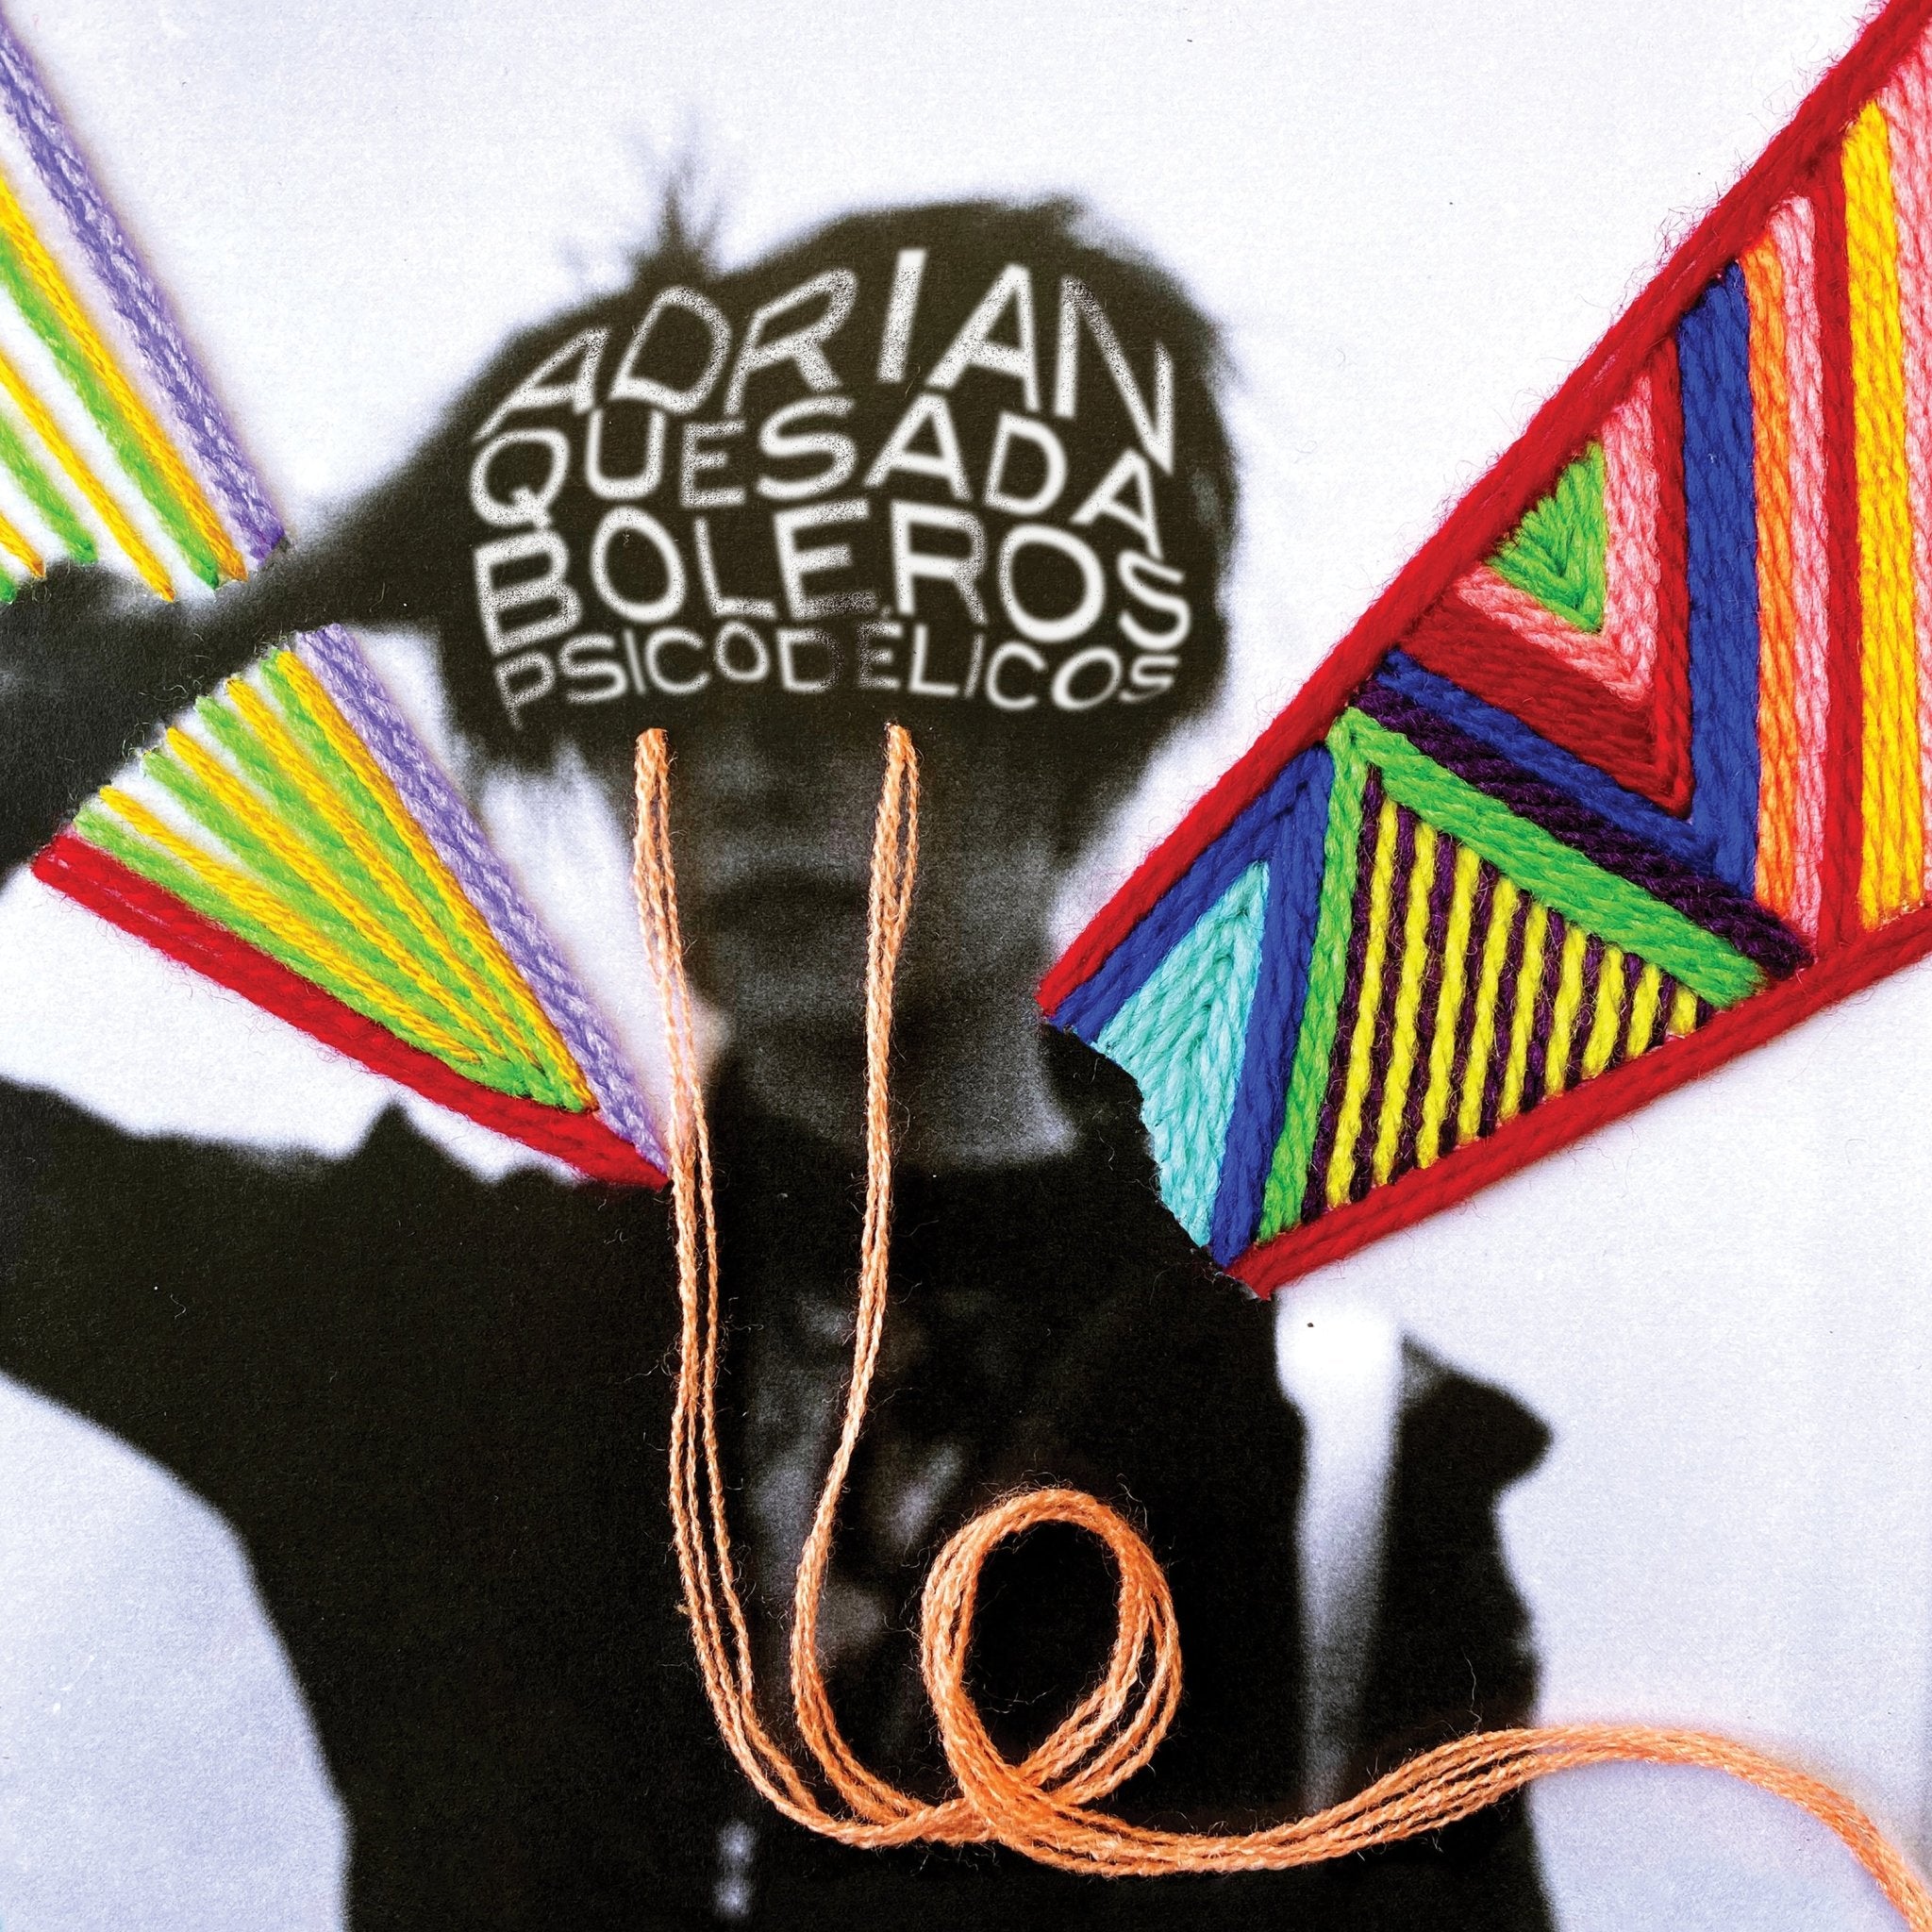 Adrian Quesada - Boleros Psicodelicos - Vinyl - LP - 33RPM